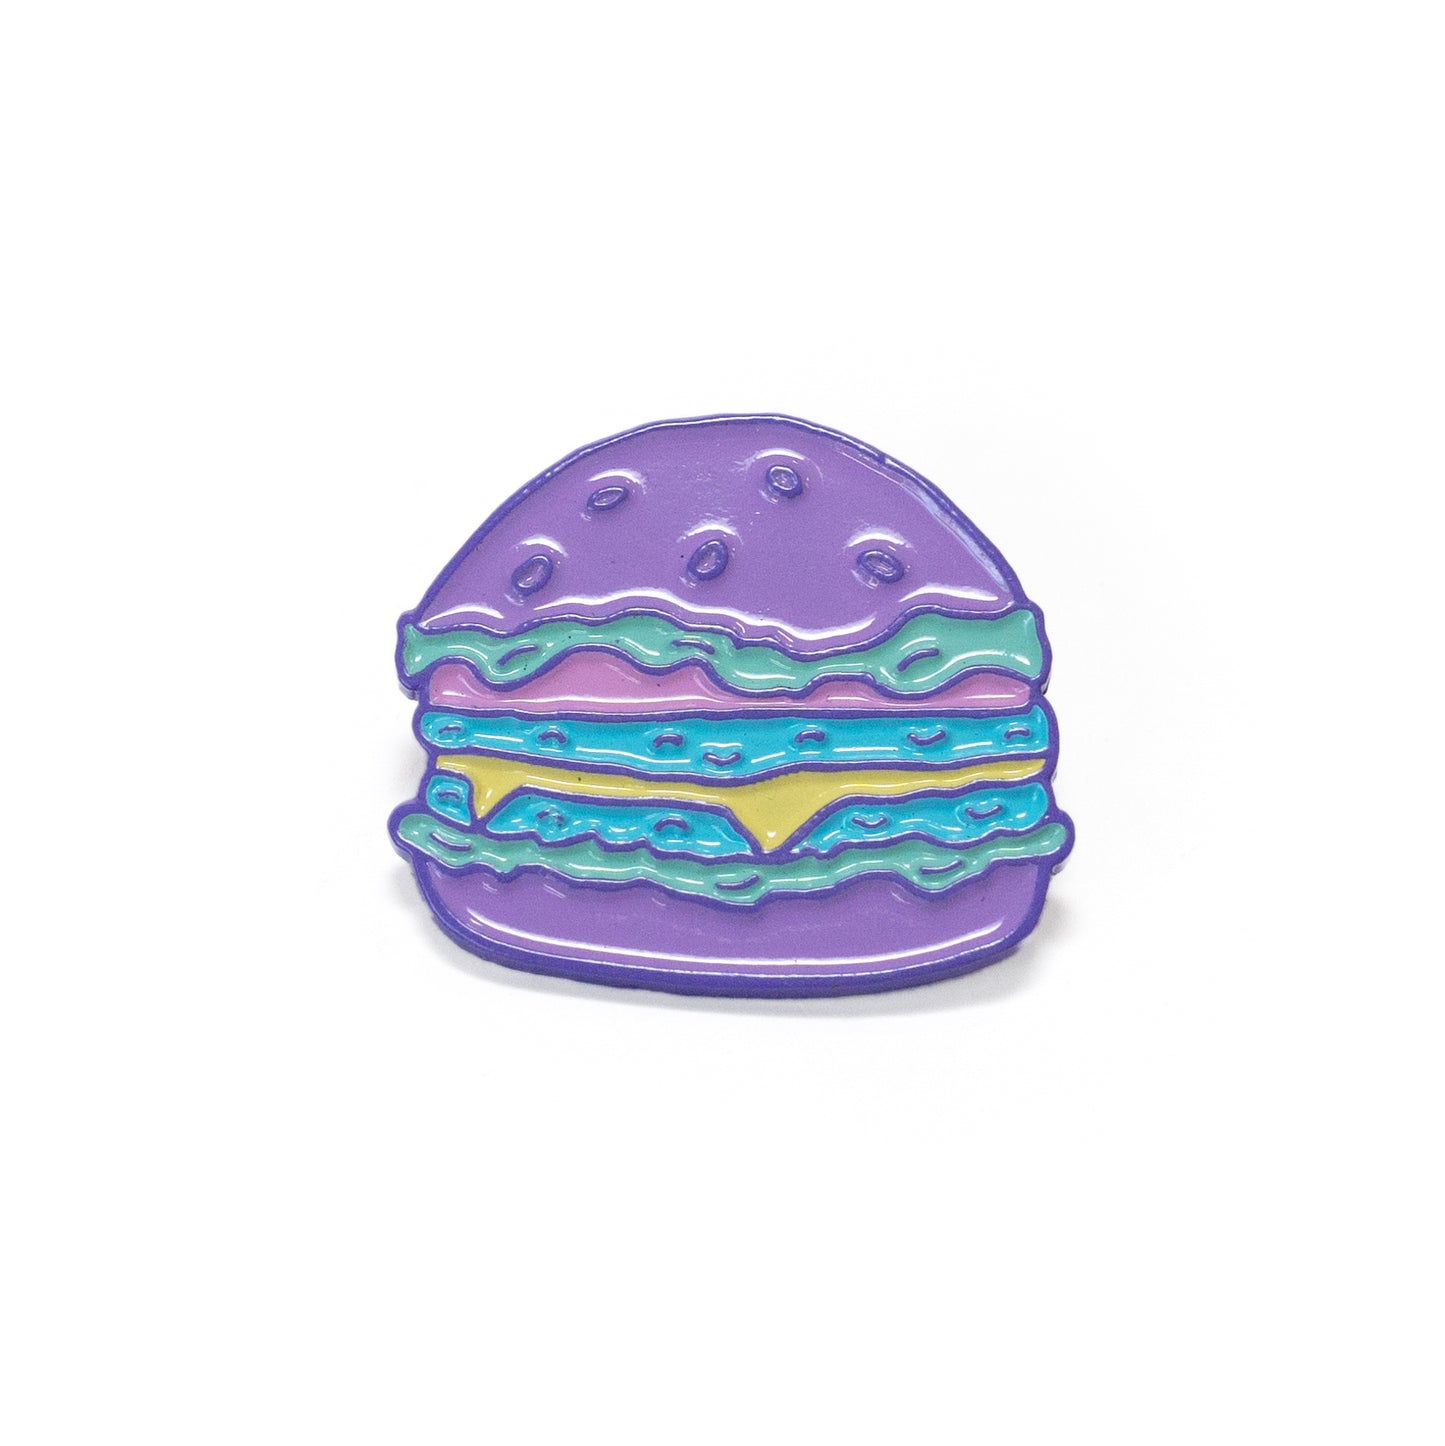 Hamburger Enamel Pin